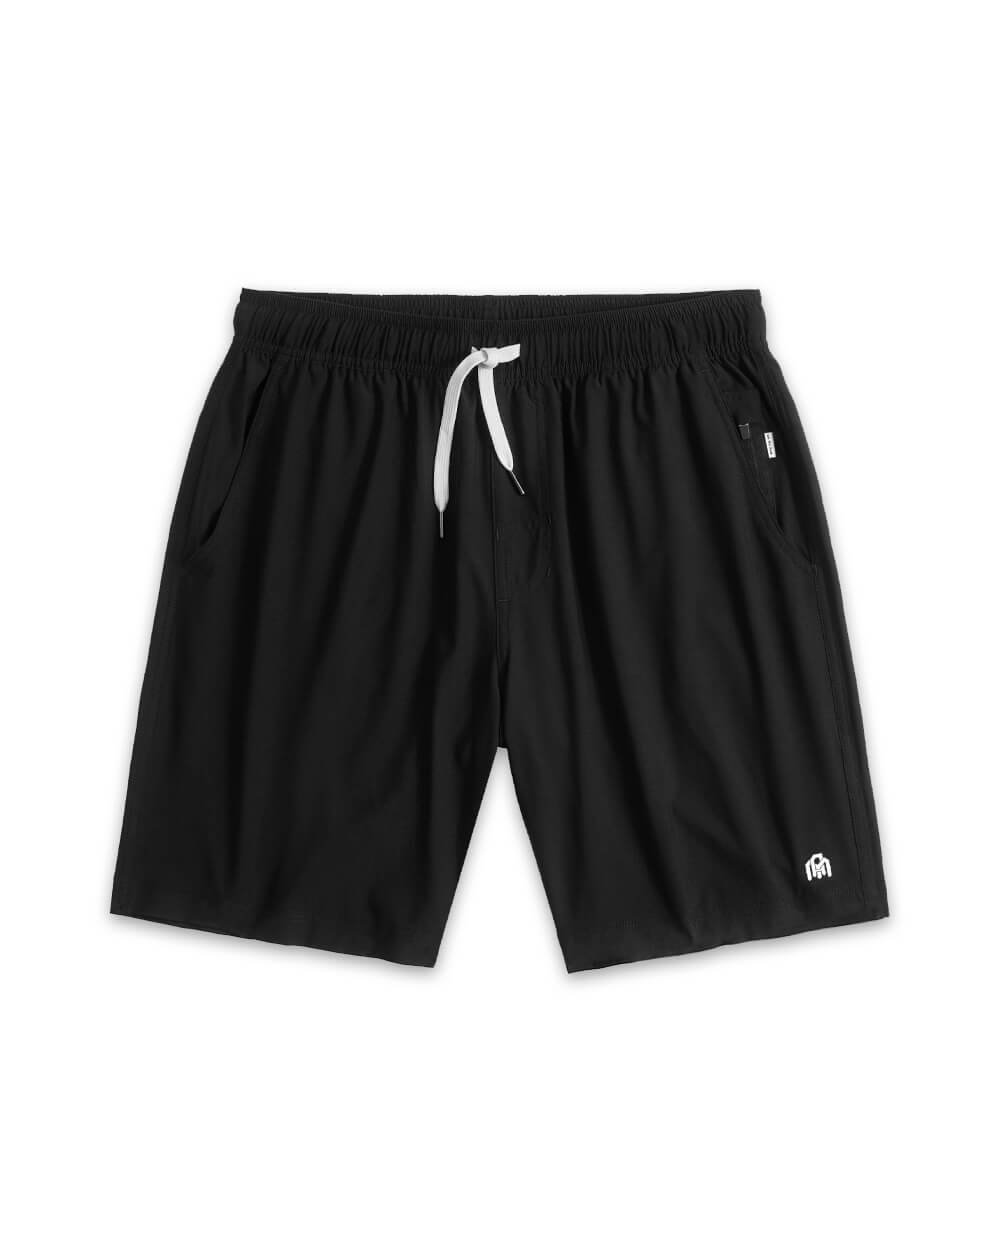 Basic Athletic Shorts-Black-Front